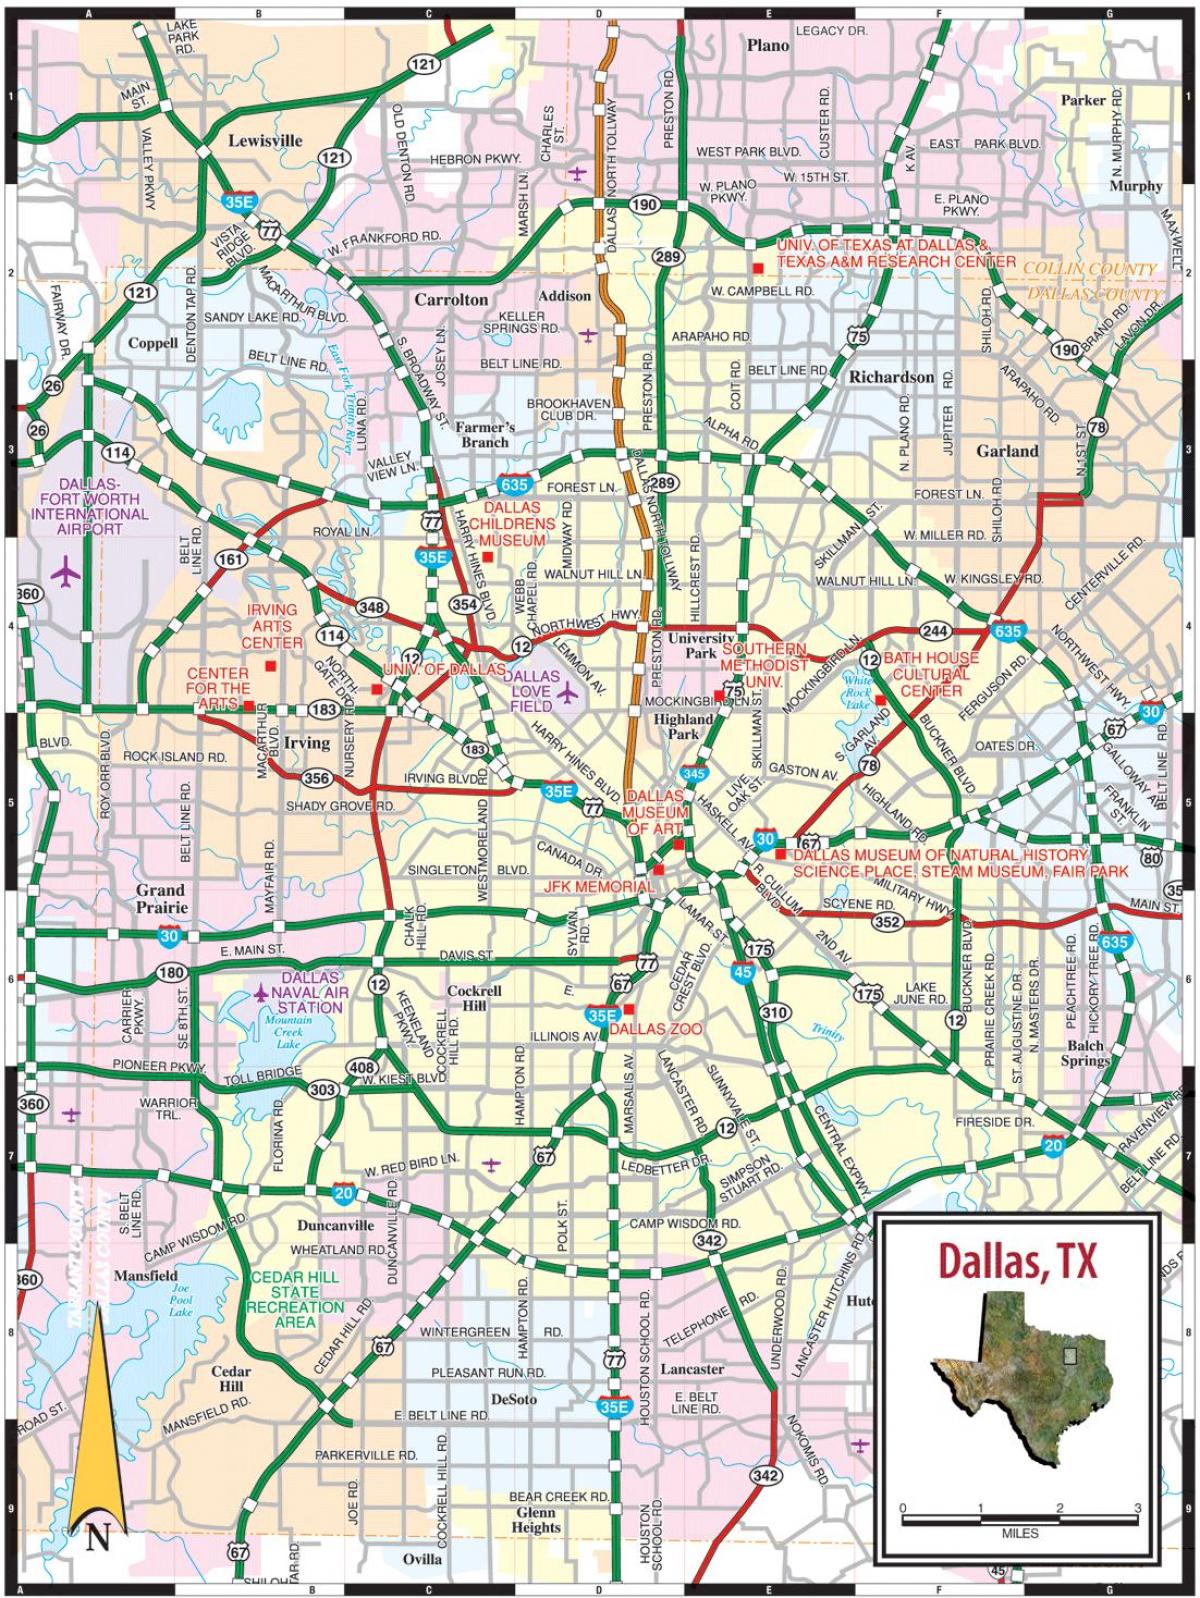 zemljevid Dallas tx